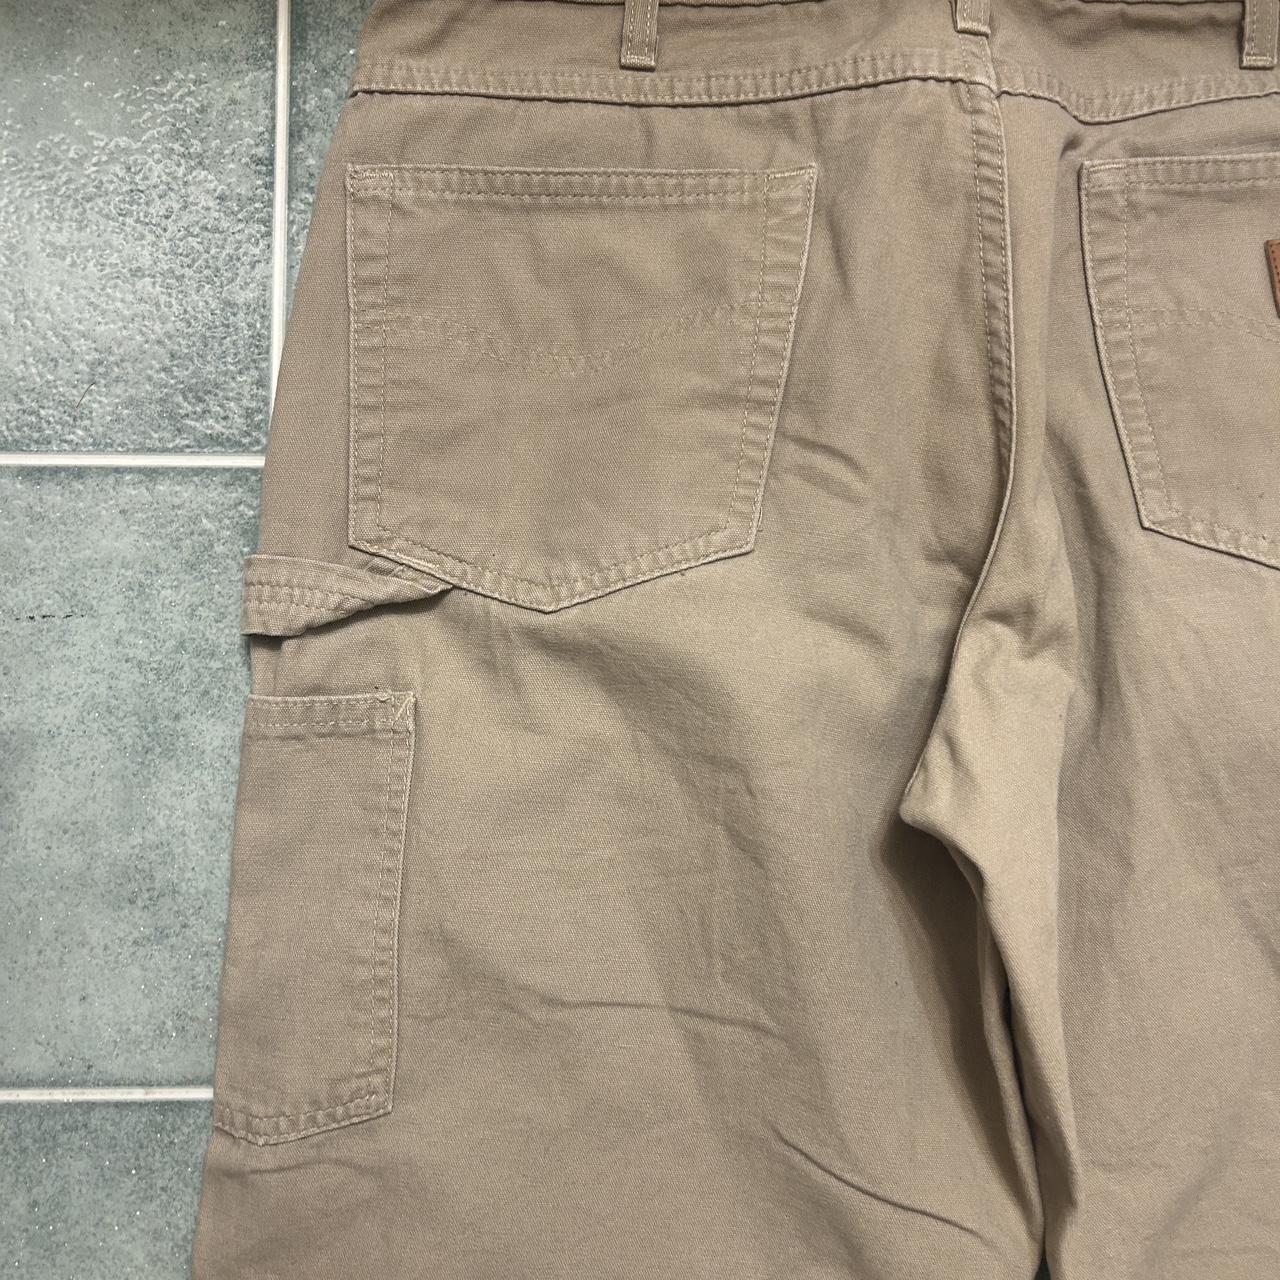 Super Clean Tan Carhartt Carpenter Pants waist... - Depop